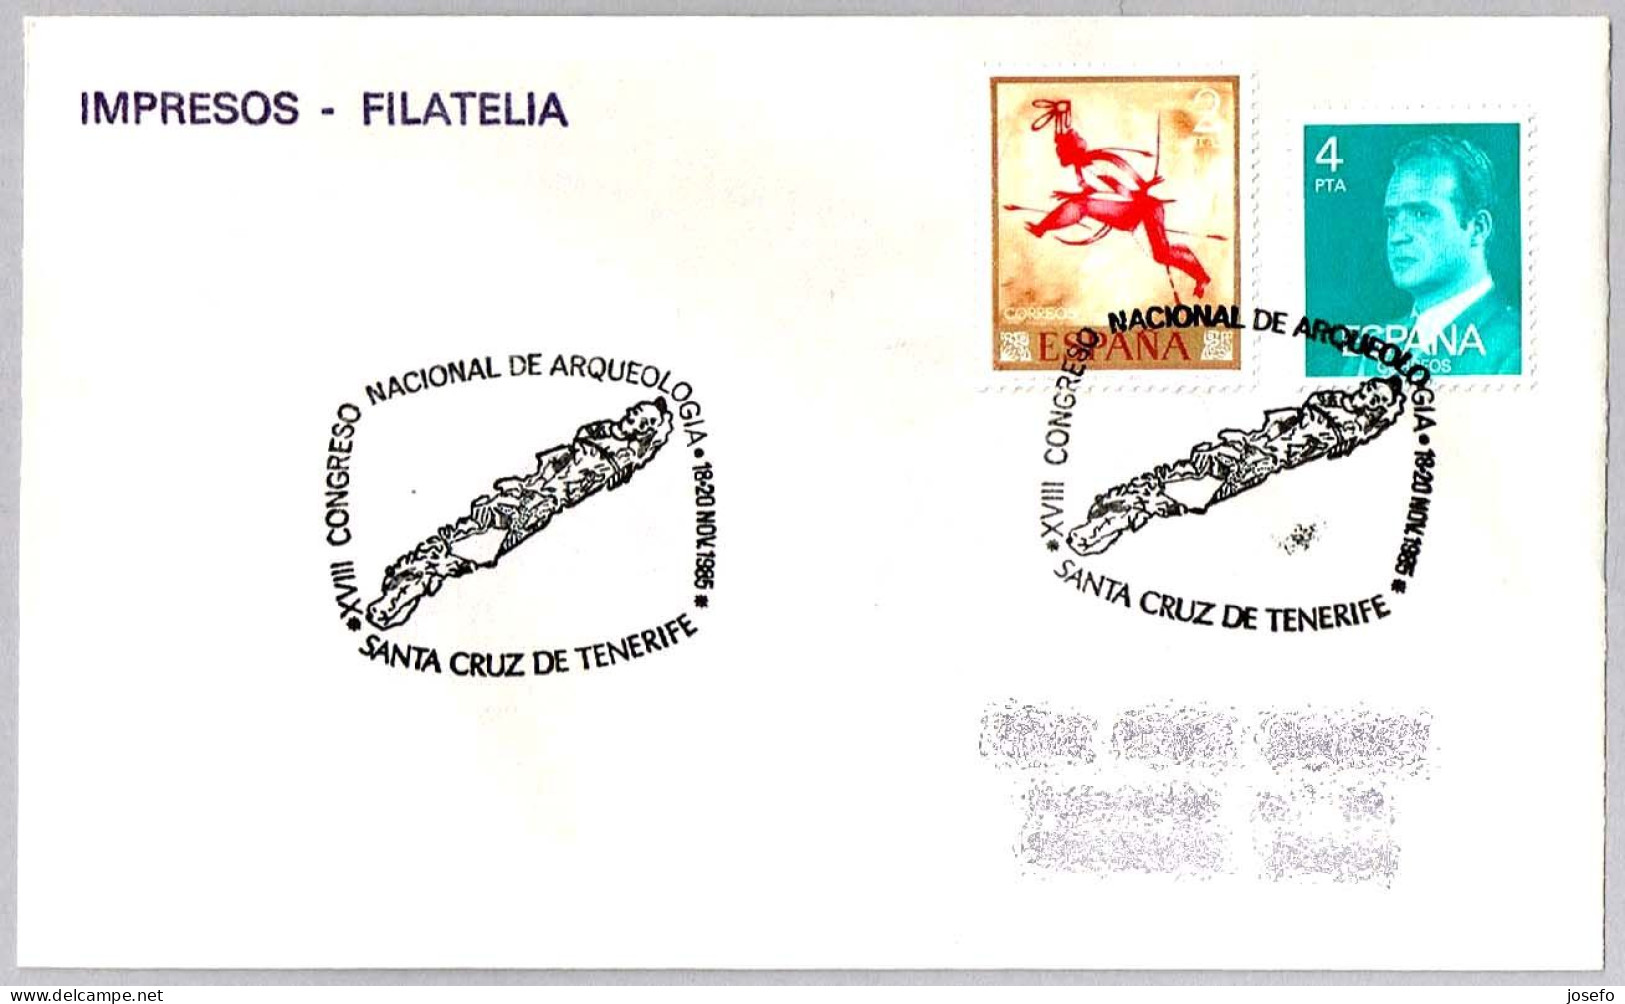 CONGRESO NACIONAL DE ARQUEOLOGIA - Arquelology National Congress. S.C.Tenerife, Canarias, 1985 - Archäologie